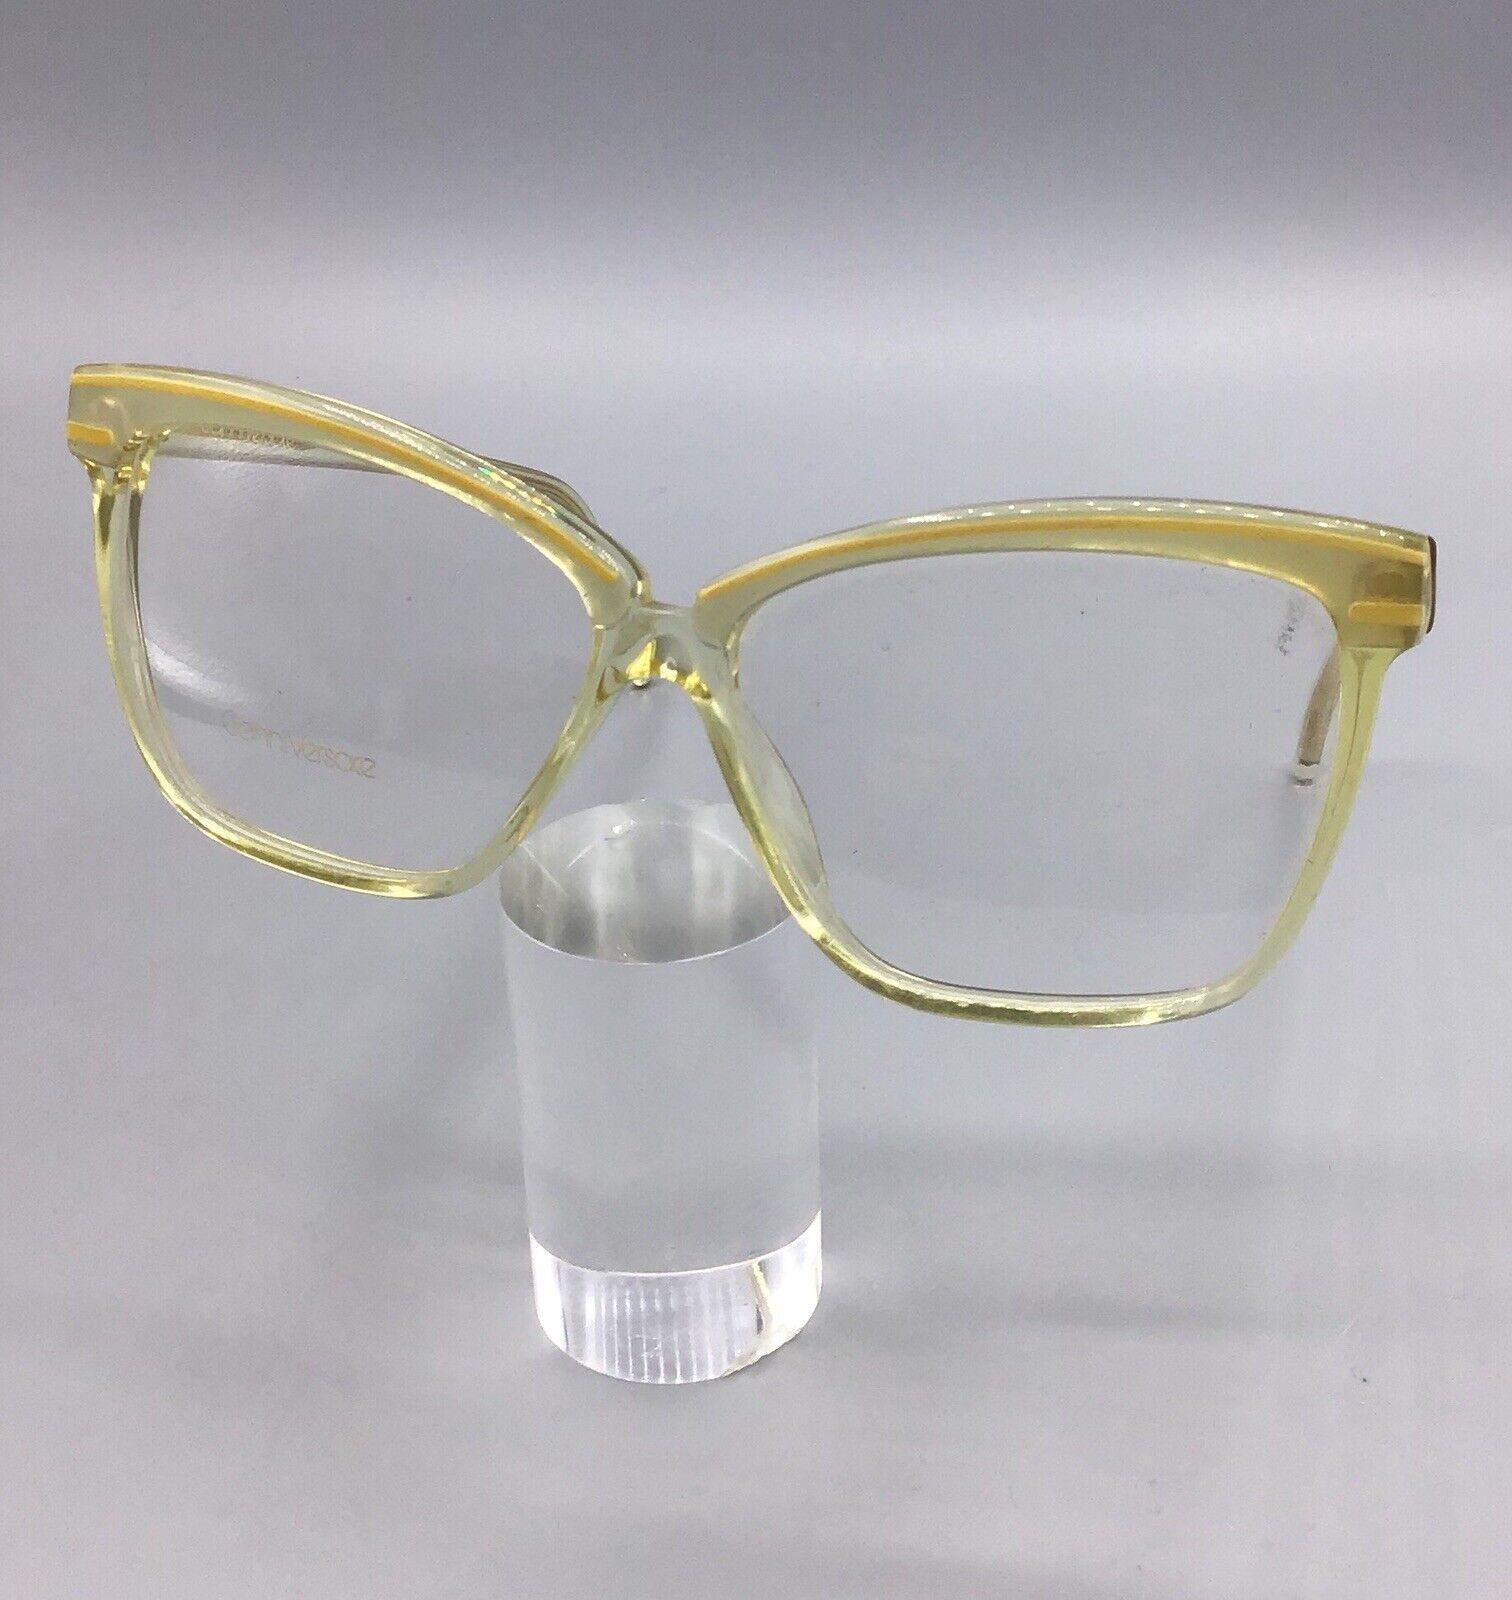 Versace 414 771 occhiale vintage eyewear frame brillen lunettes